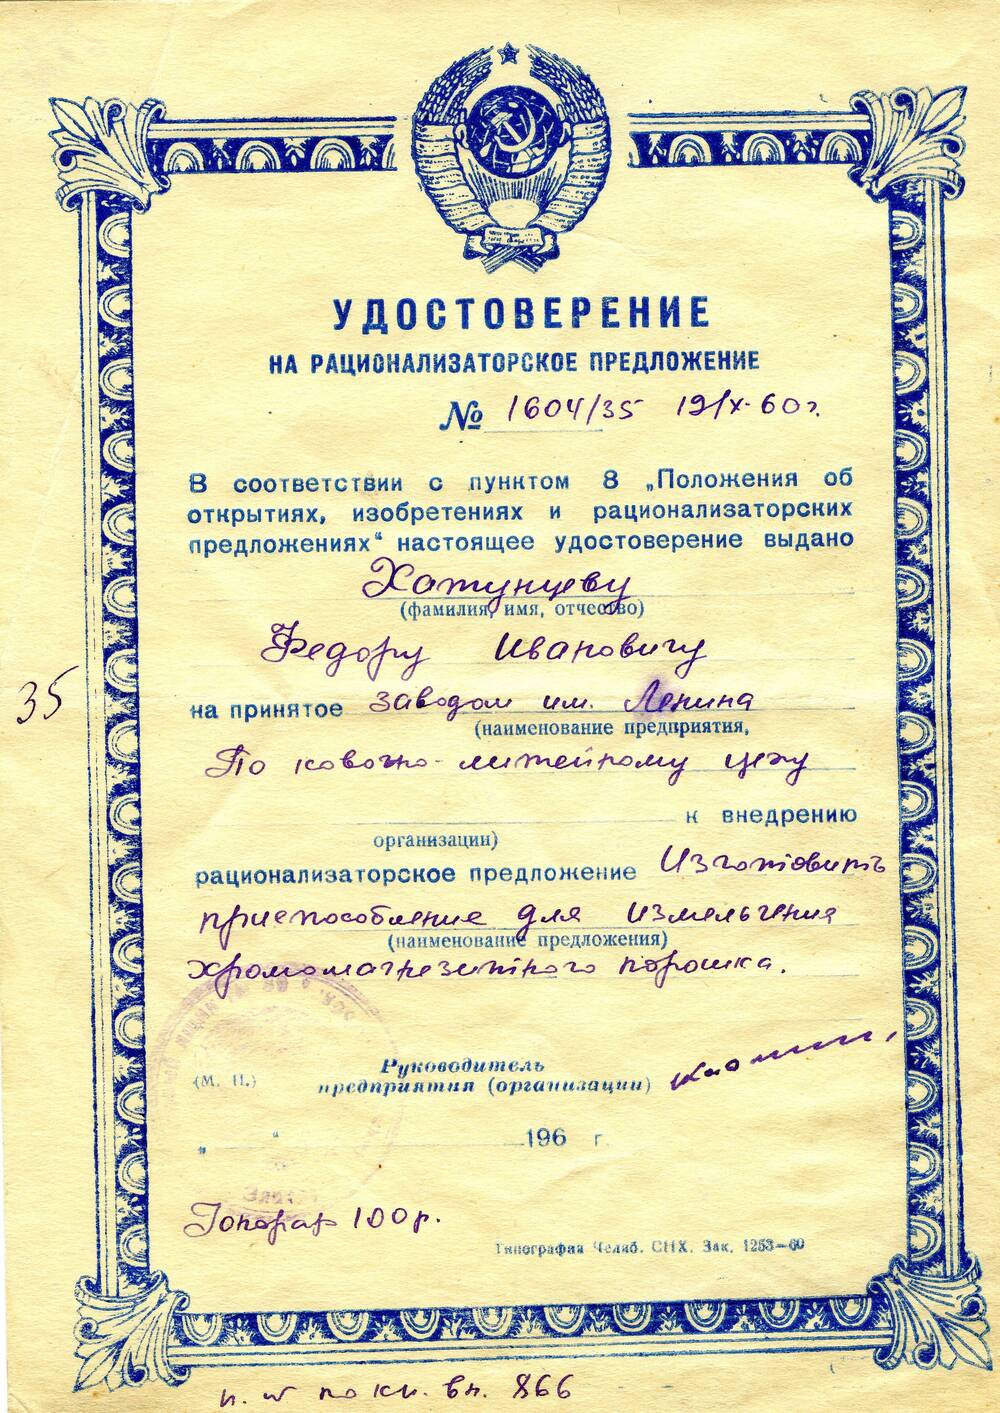 Удостоверение на рационализаторское предложение №1604/35 Хатунцева Федора Ивановича. 1960 г.